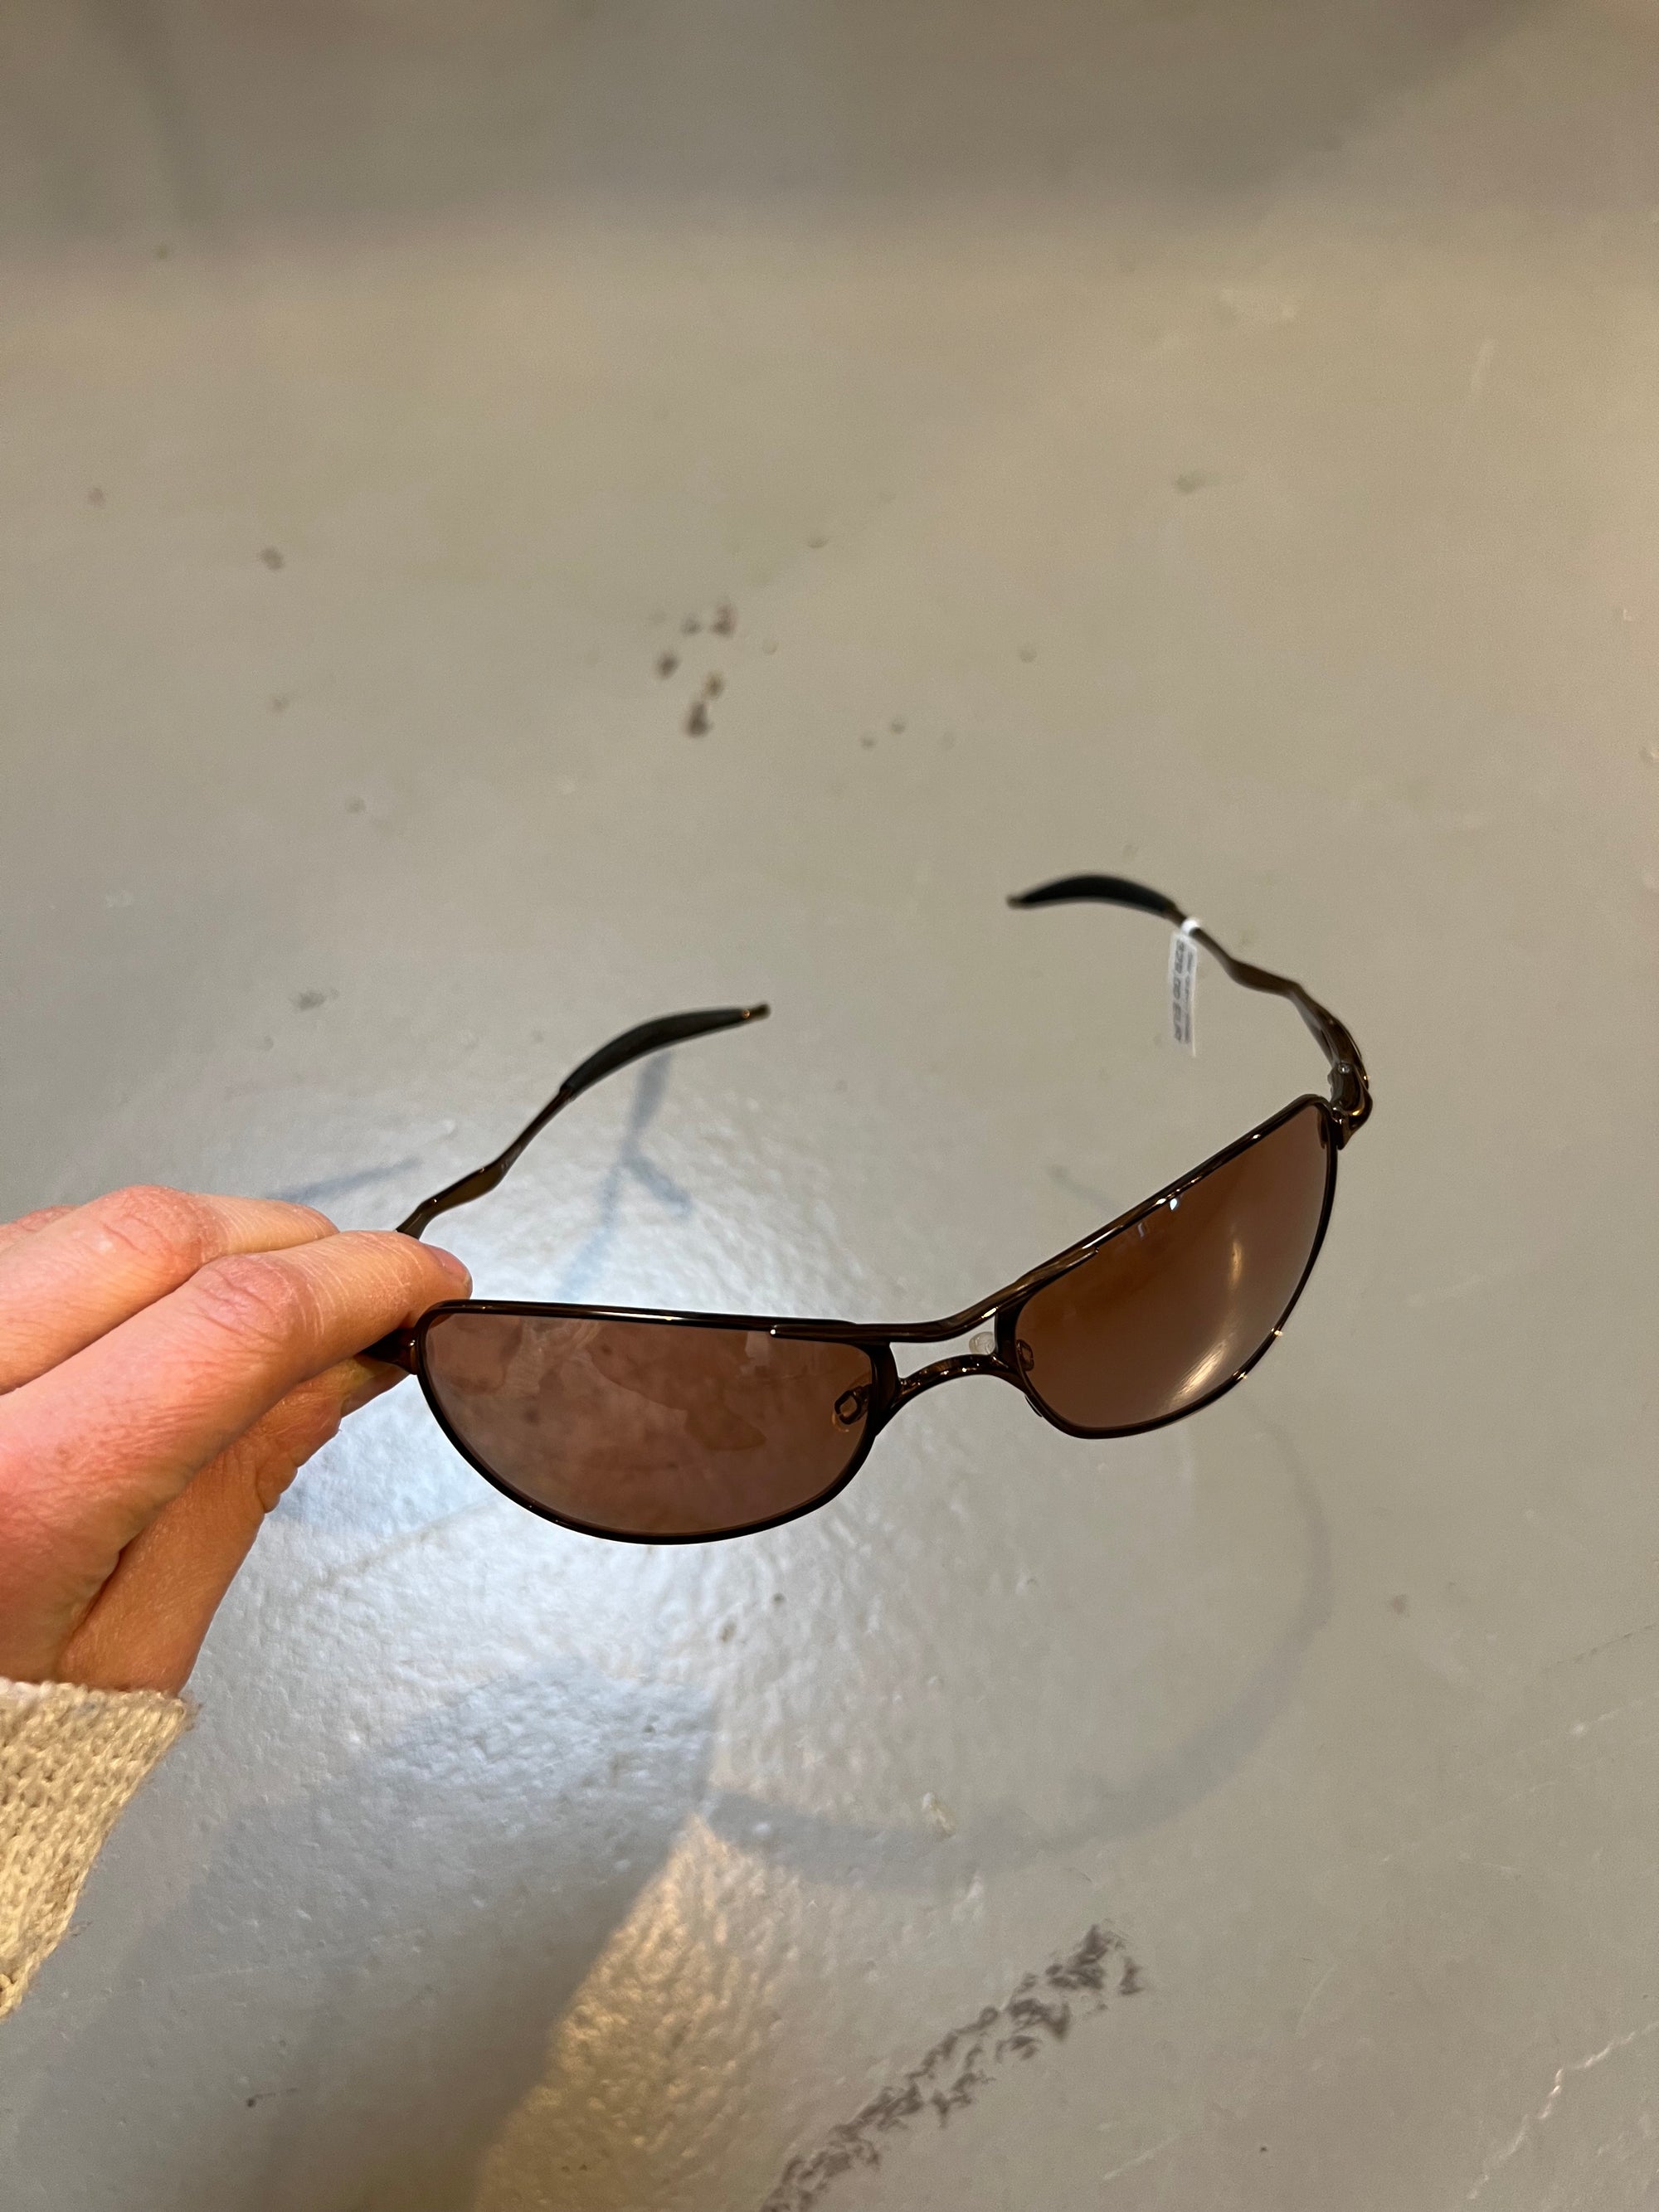 Produktbild von Oakley Titanium Sunglasses von Schräg vorne